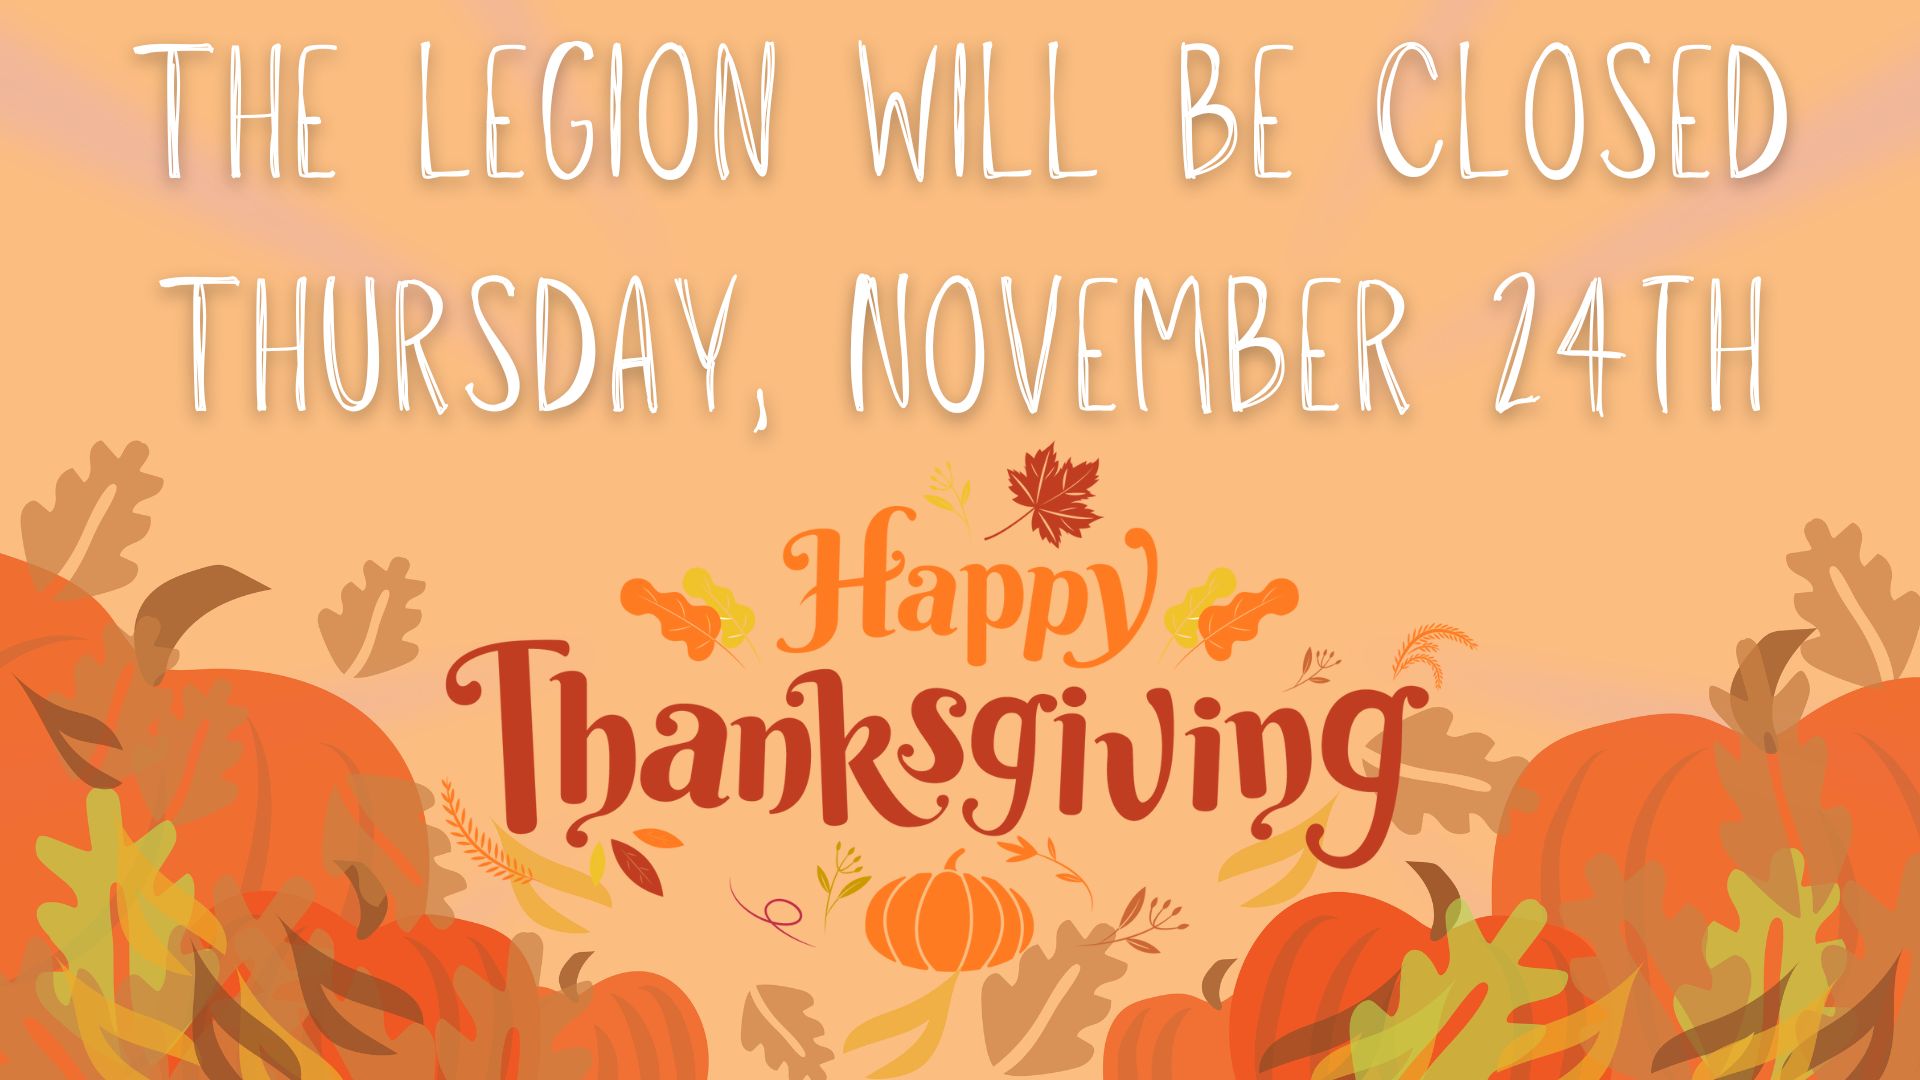 Legion will be closed Thursday, November 24th